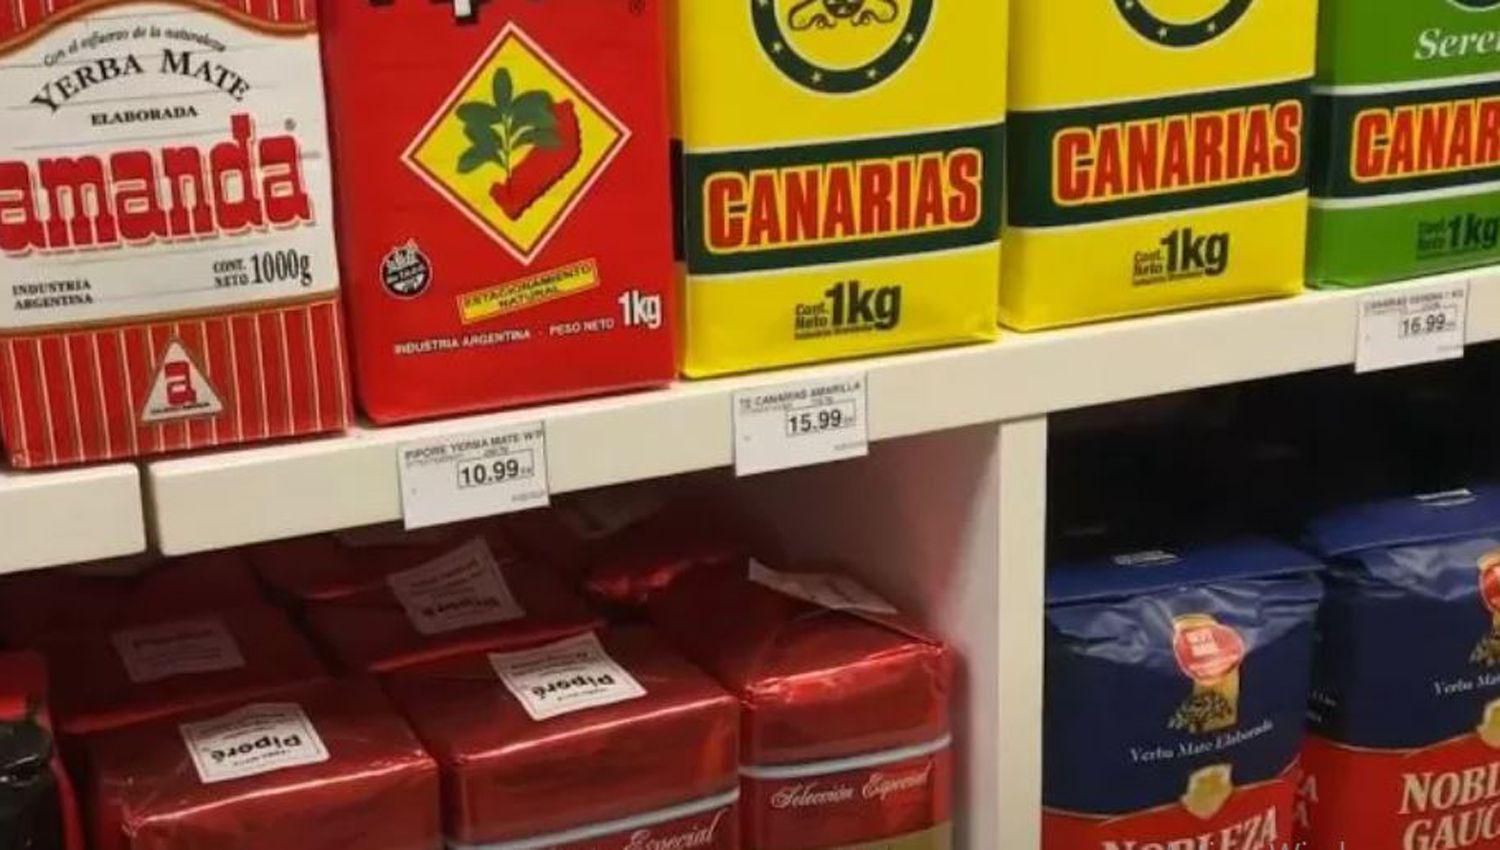  2000 el kilo de yerba- los productos argentinos que la rompen afuera coacutemo hicieron y cuaacutento cuestan